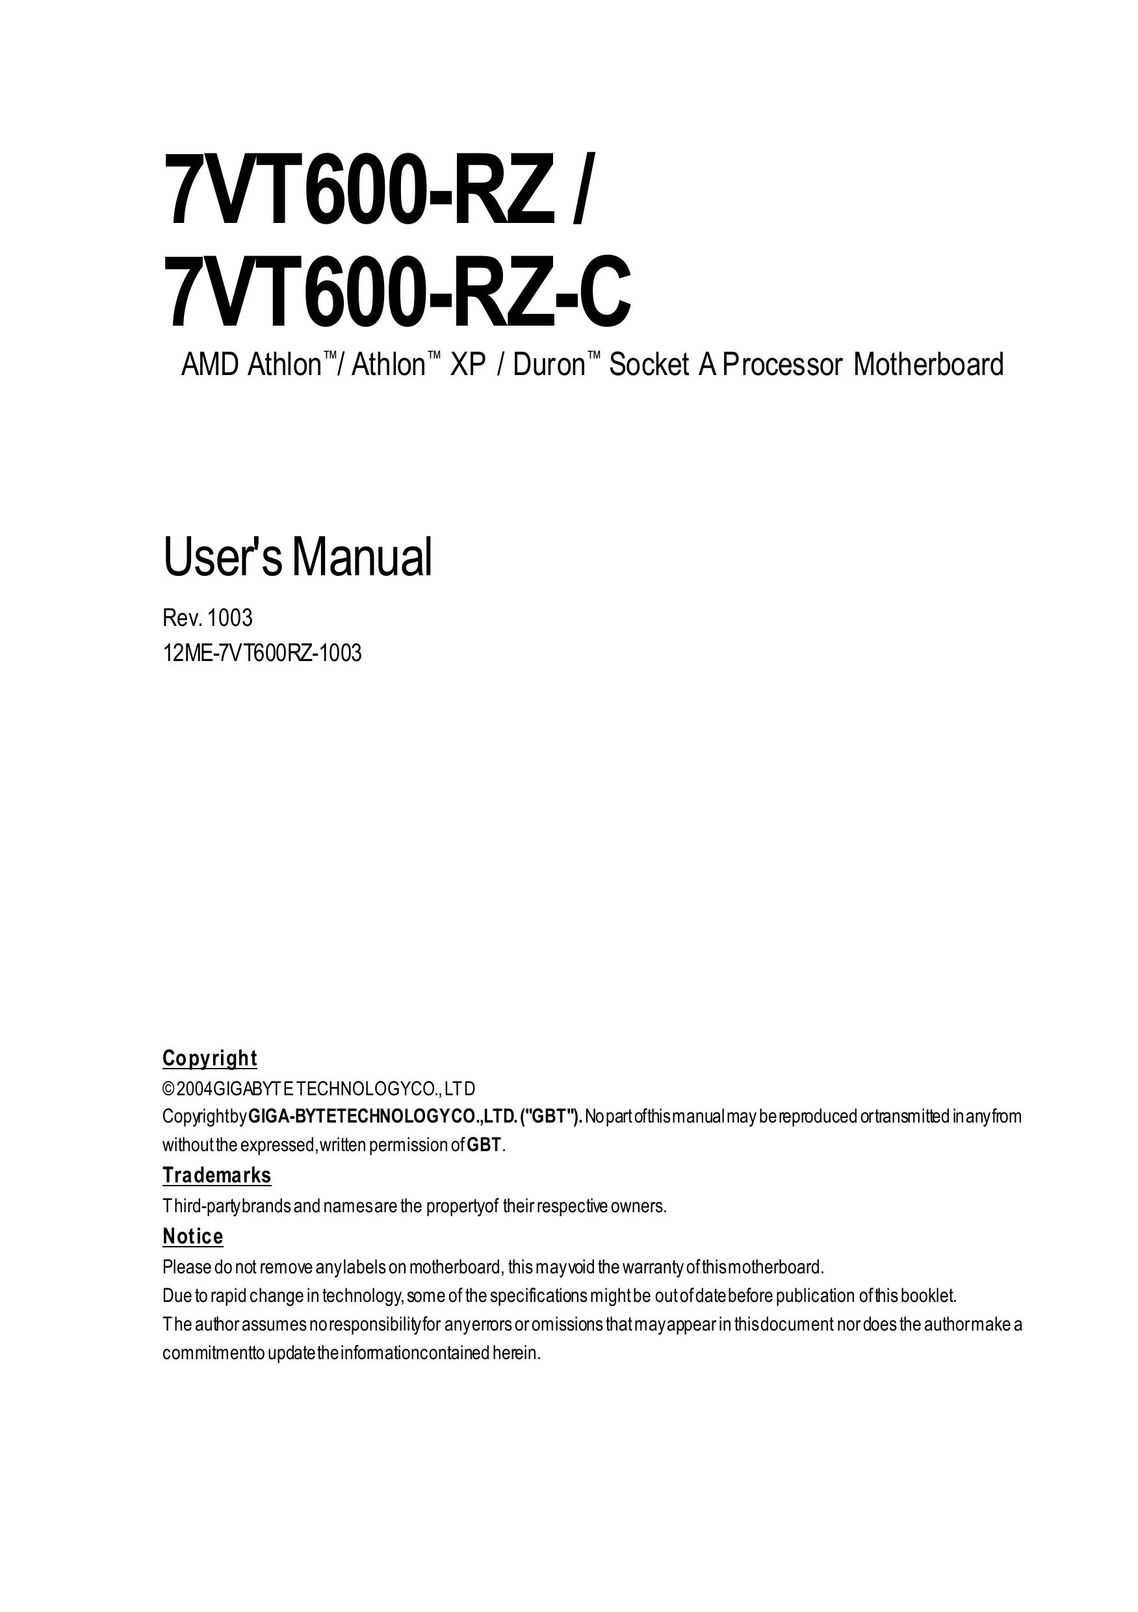 Gigabyte 7VT600-RZ-C Computer Hardware User Manual